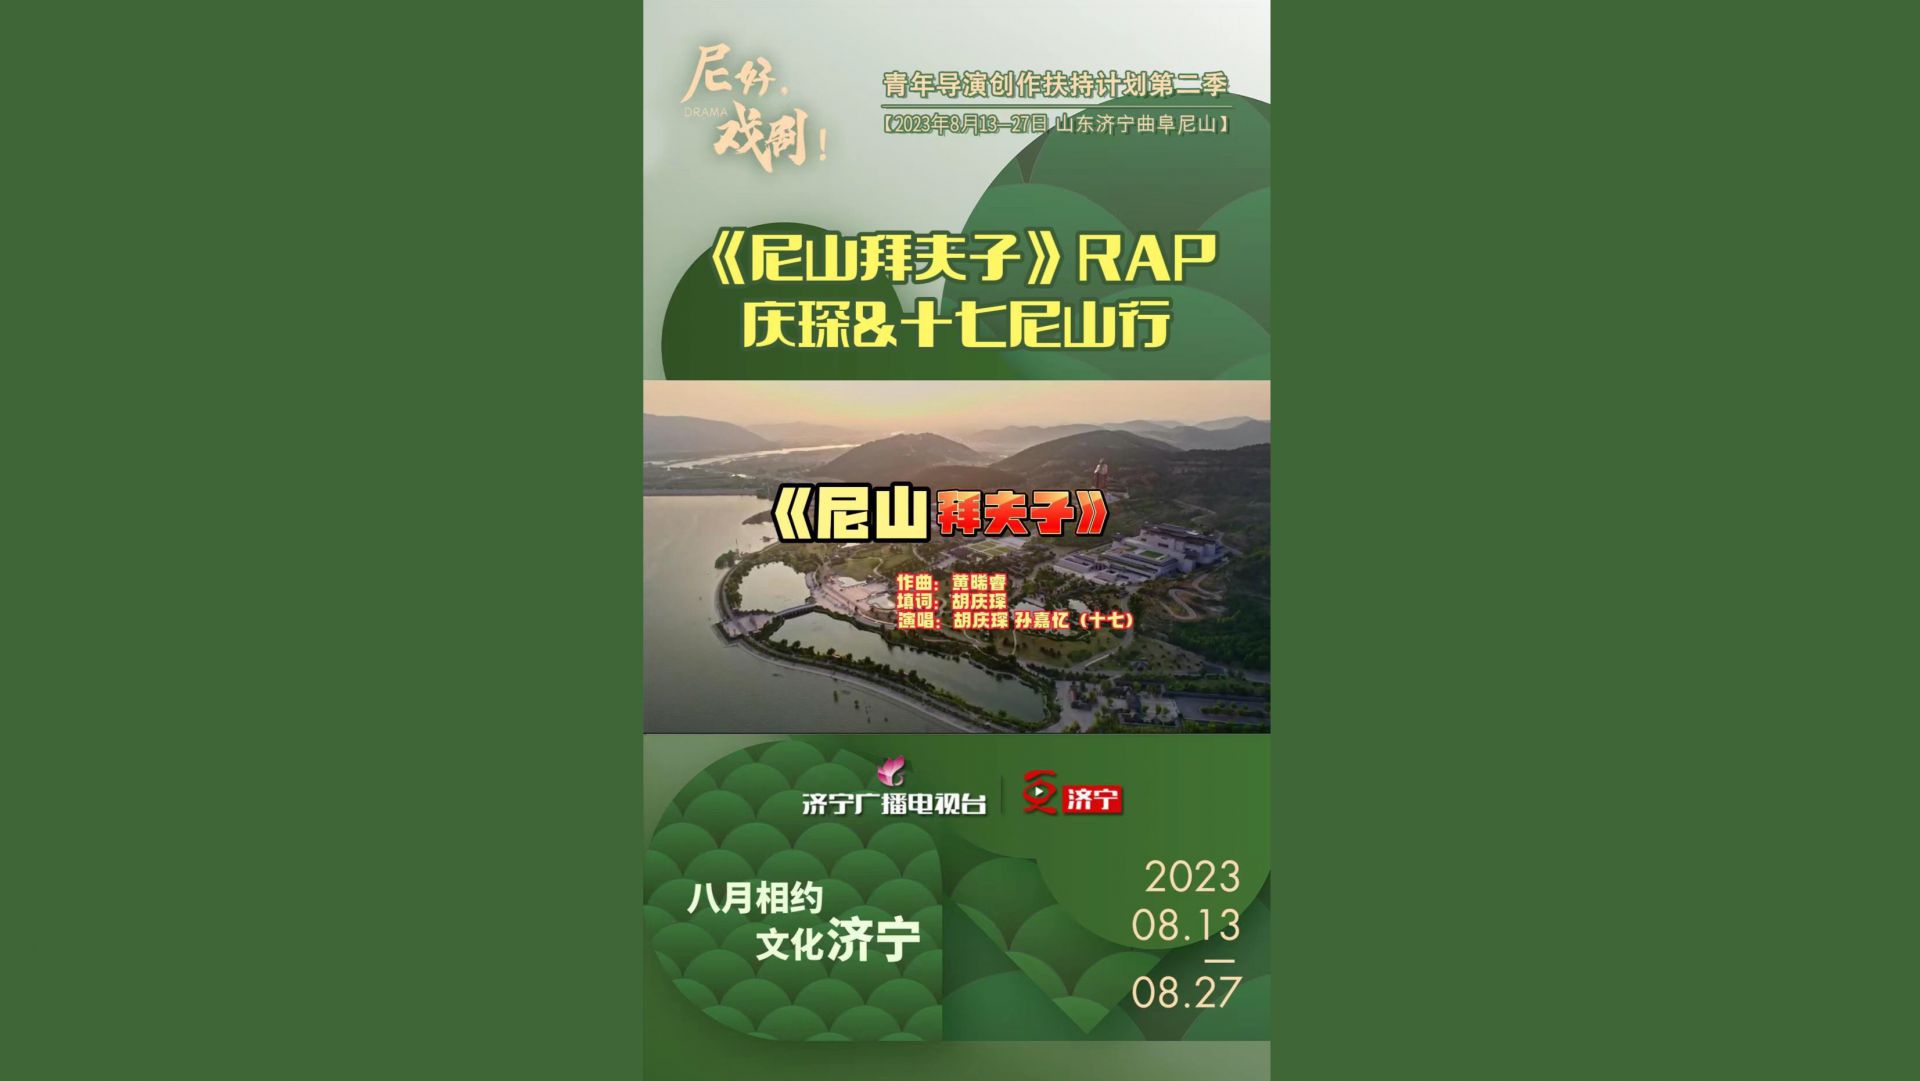 《尼山拜夫子》RAP——庆琛&十七尼山行